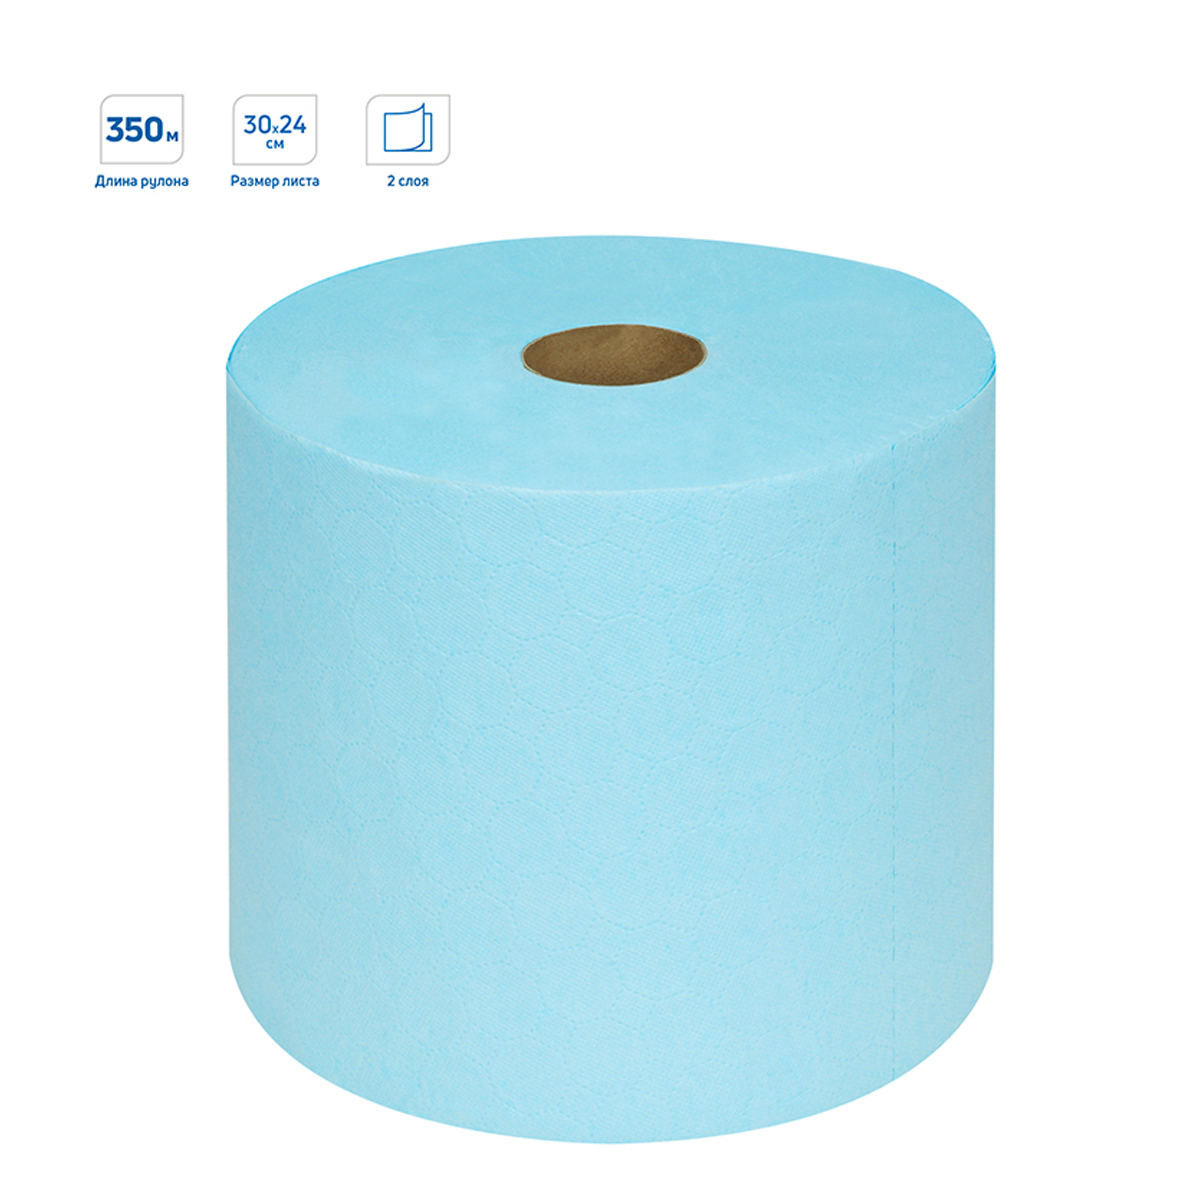 Протирочная бумага в рулонах OfficeClean Professional (W1) 2-слойная, 350м/рул, 24*30см, синяя люкс 279671